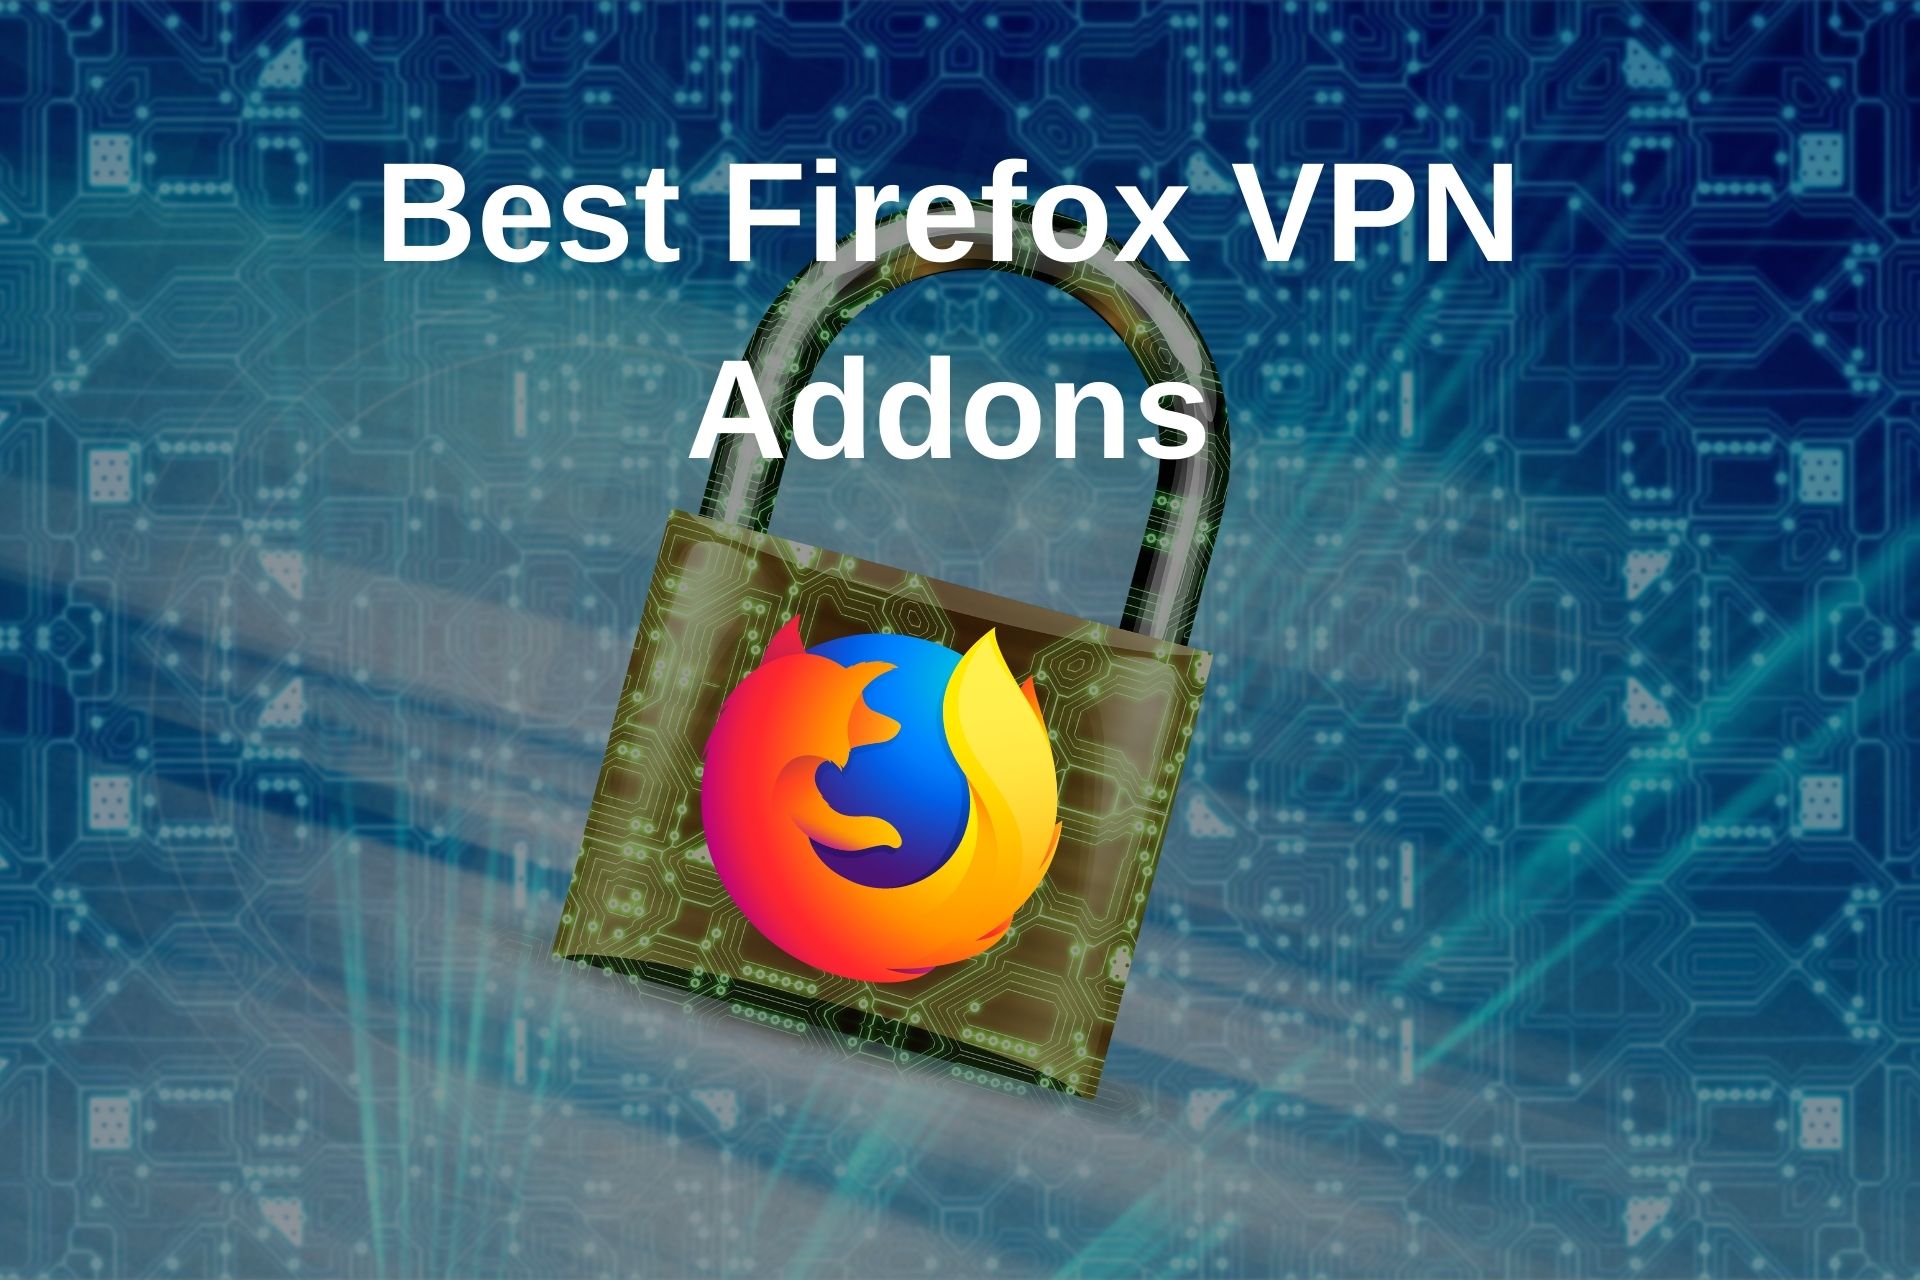 Best Firefox VPN Addons